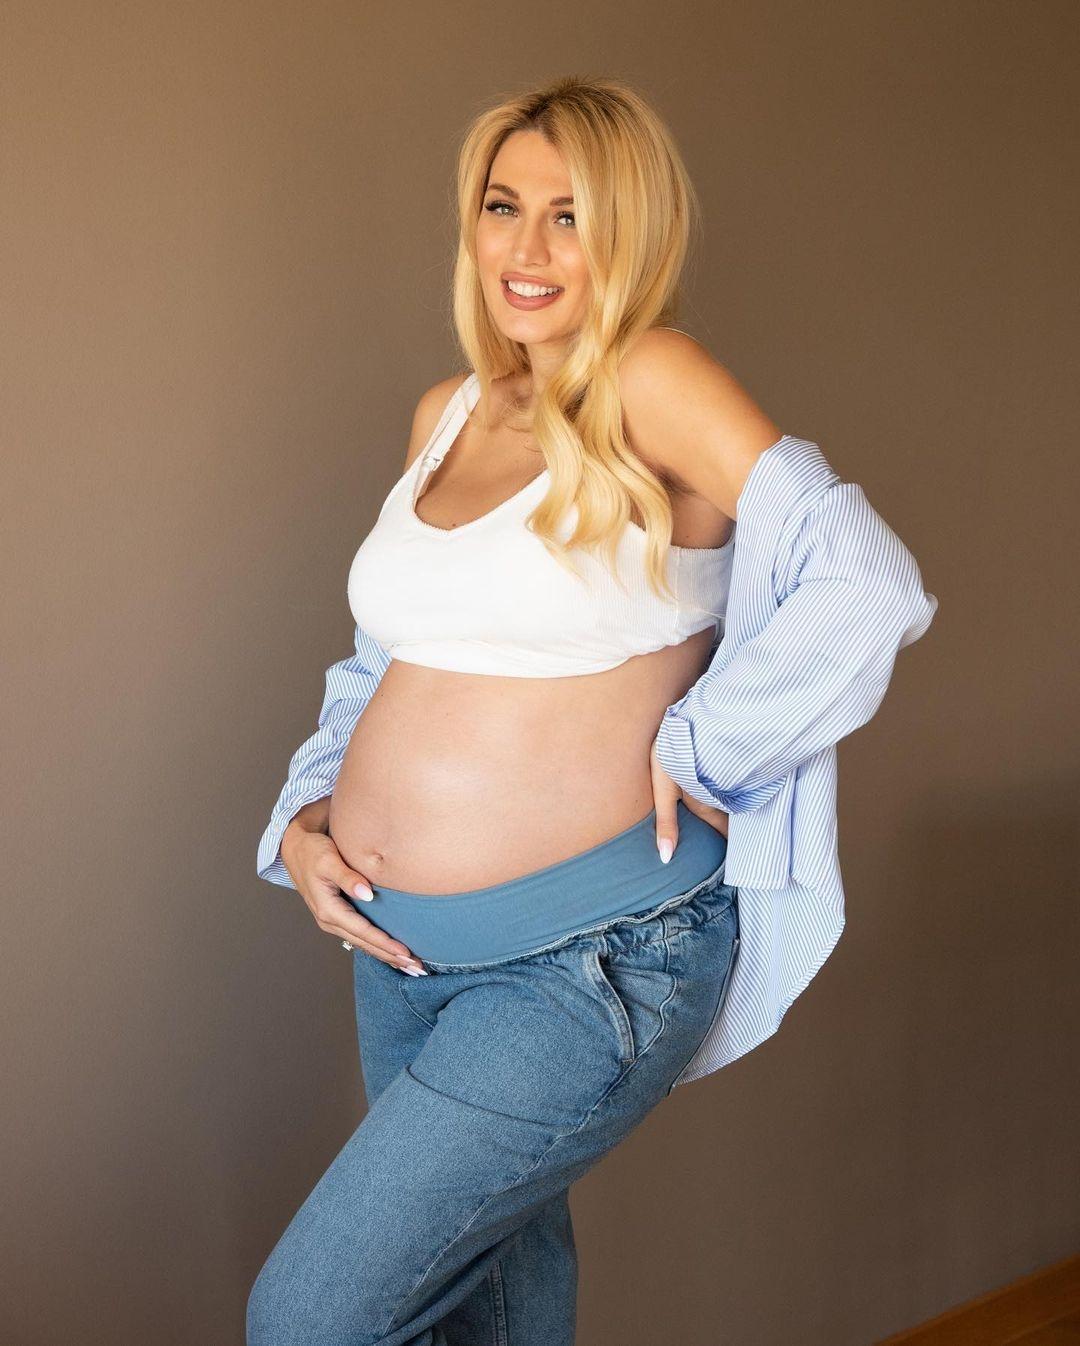 Κωνσταντίνα Σπυροπούλου: Η μεγάλη αλλαγή πριν και μετά την εγκυμοσύνη της